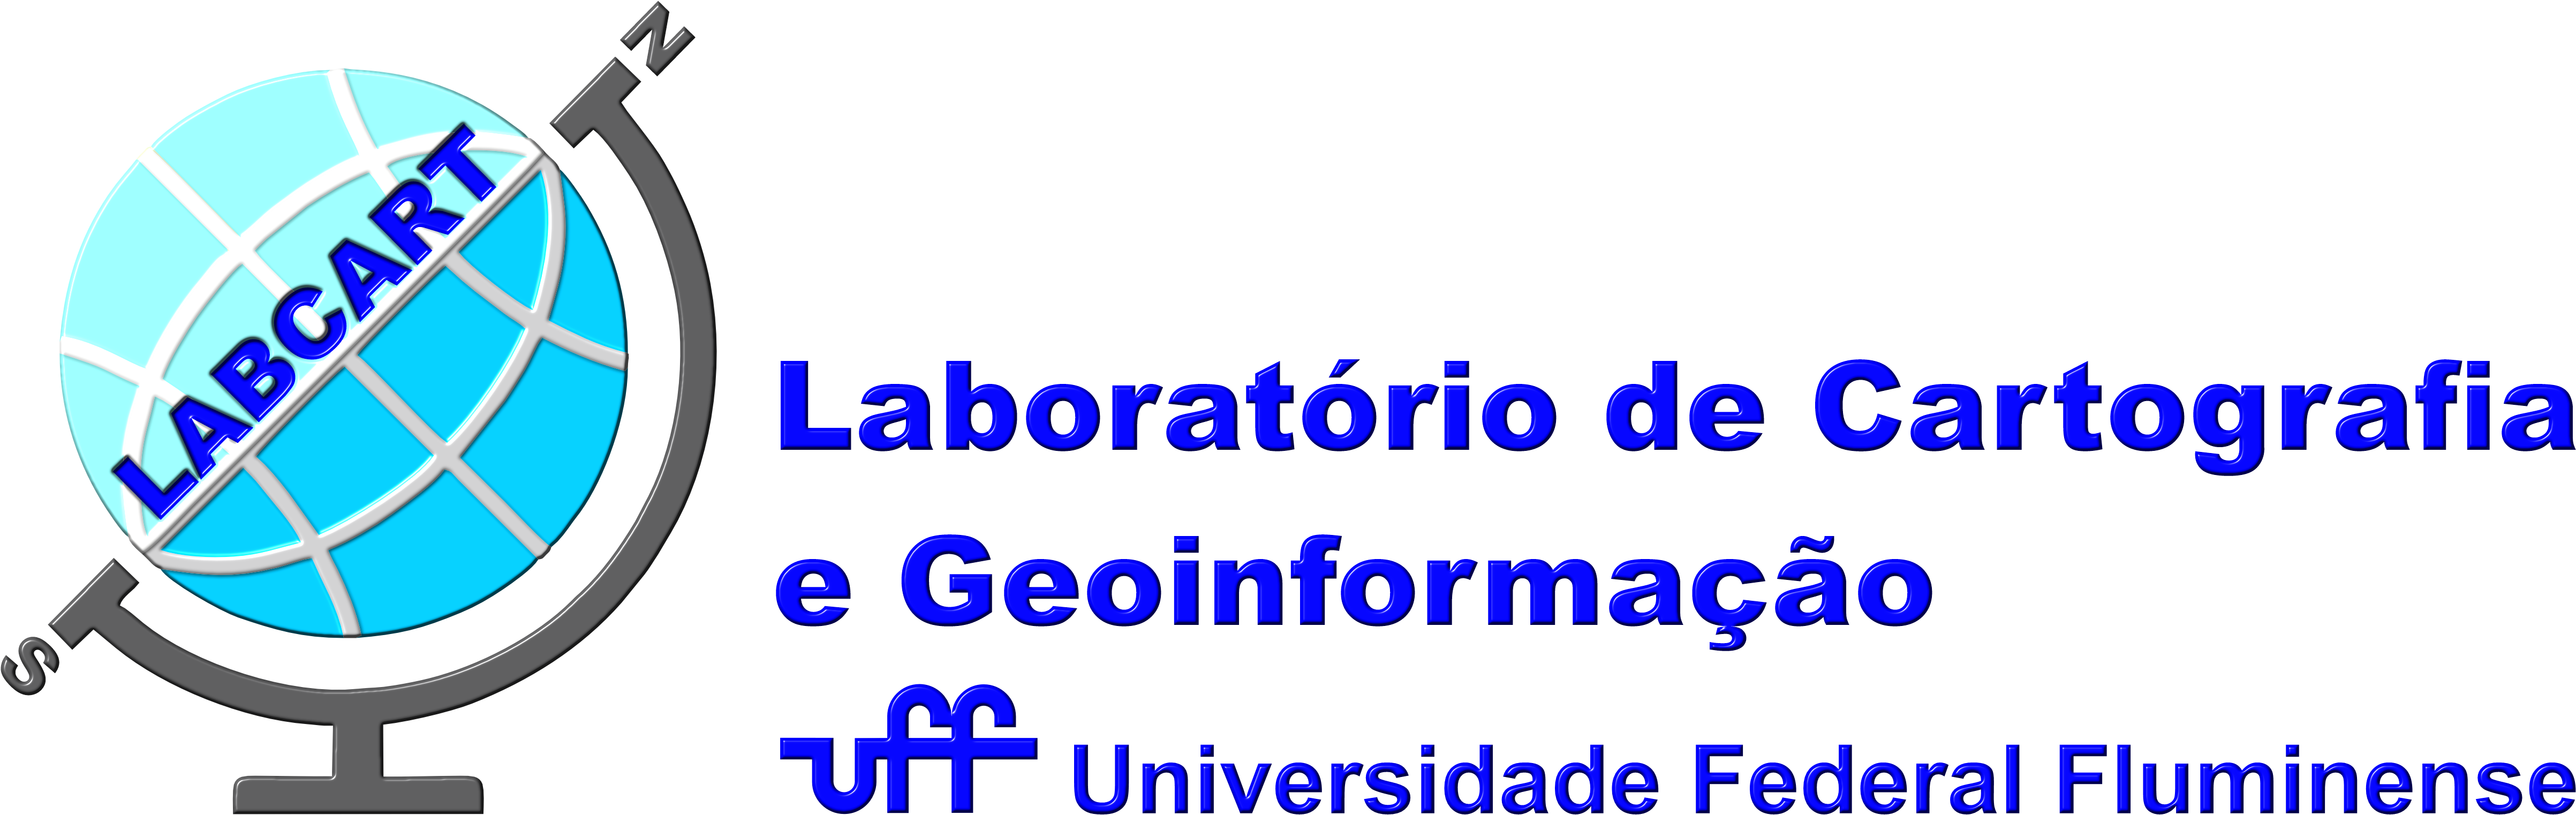 LABCART - Laboratório de Cartografia e Geoinformação / Departamento de Análise Geoambiental